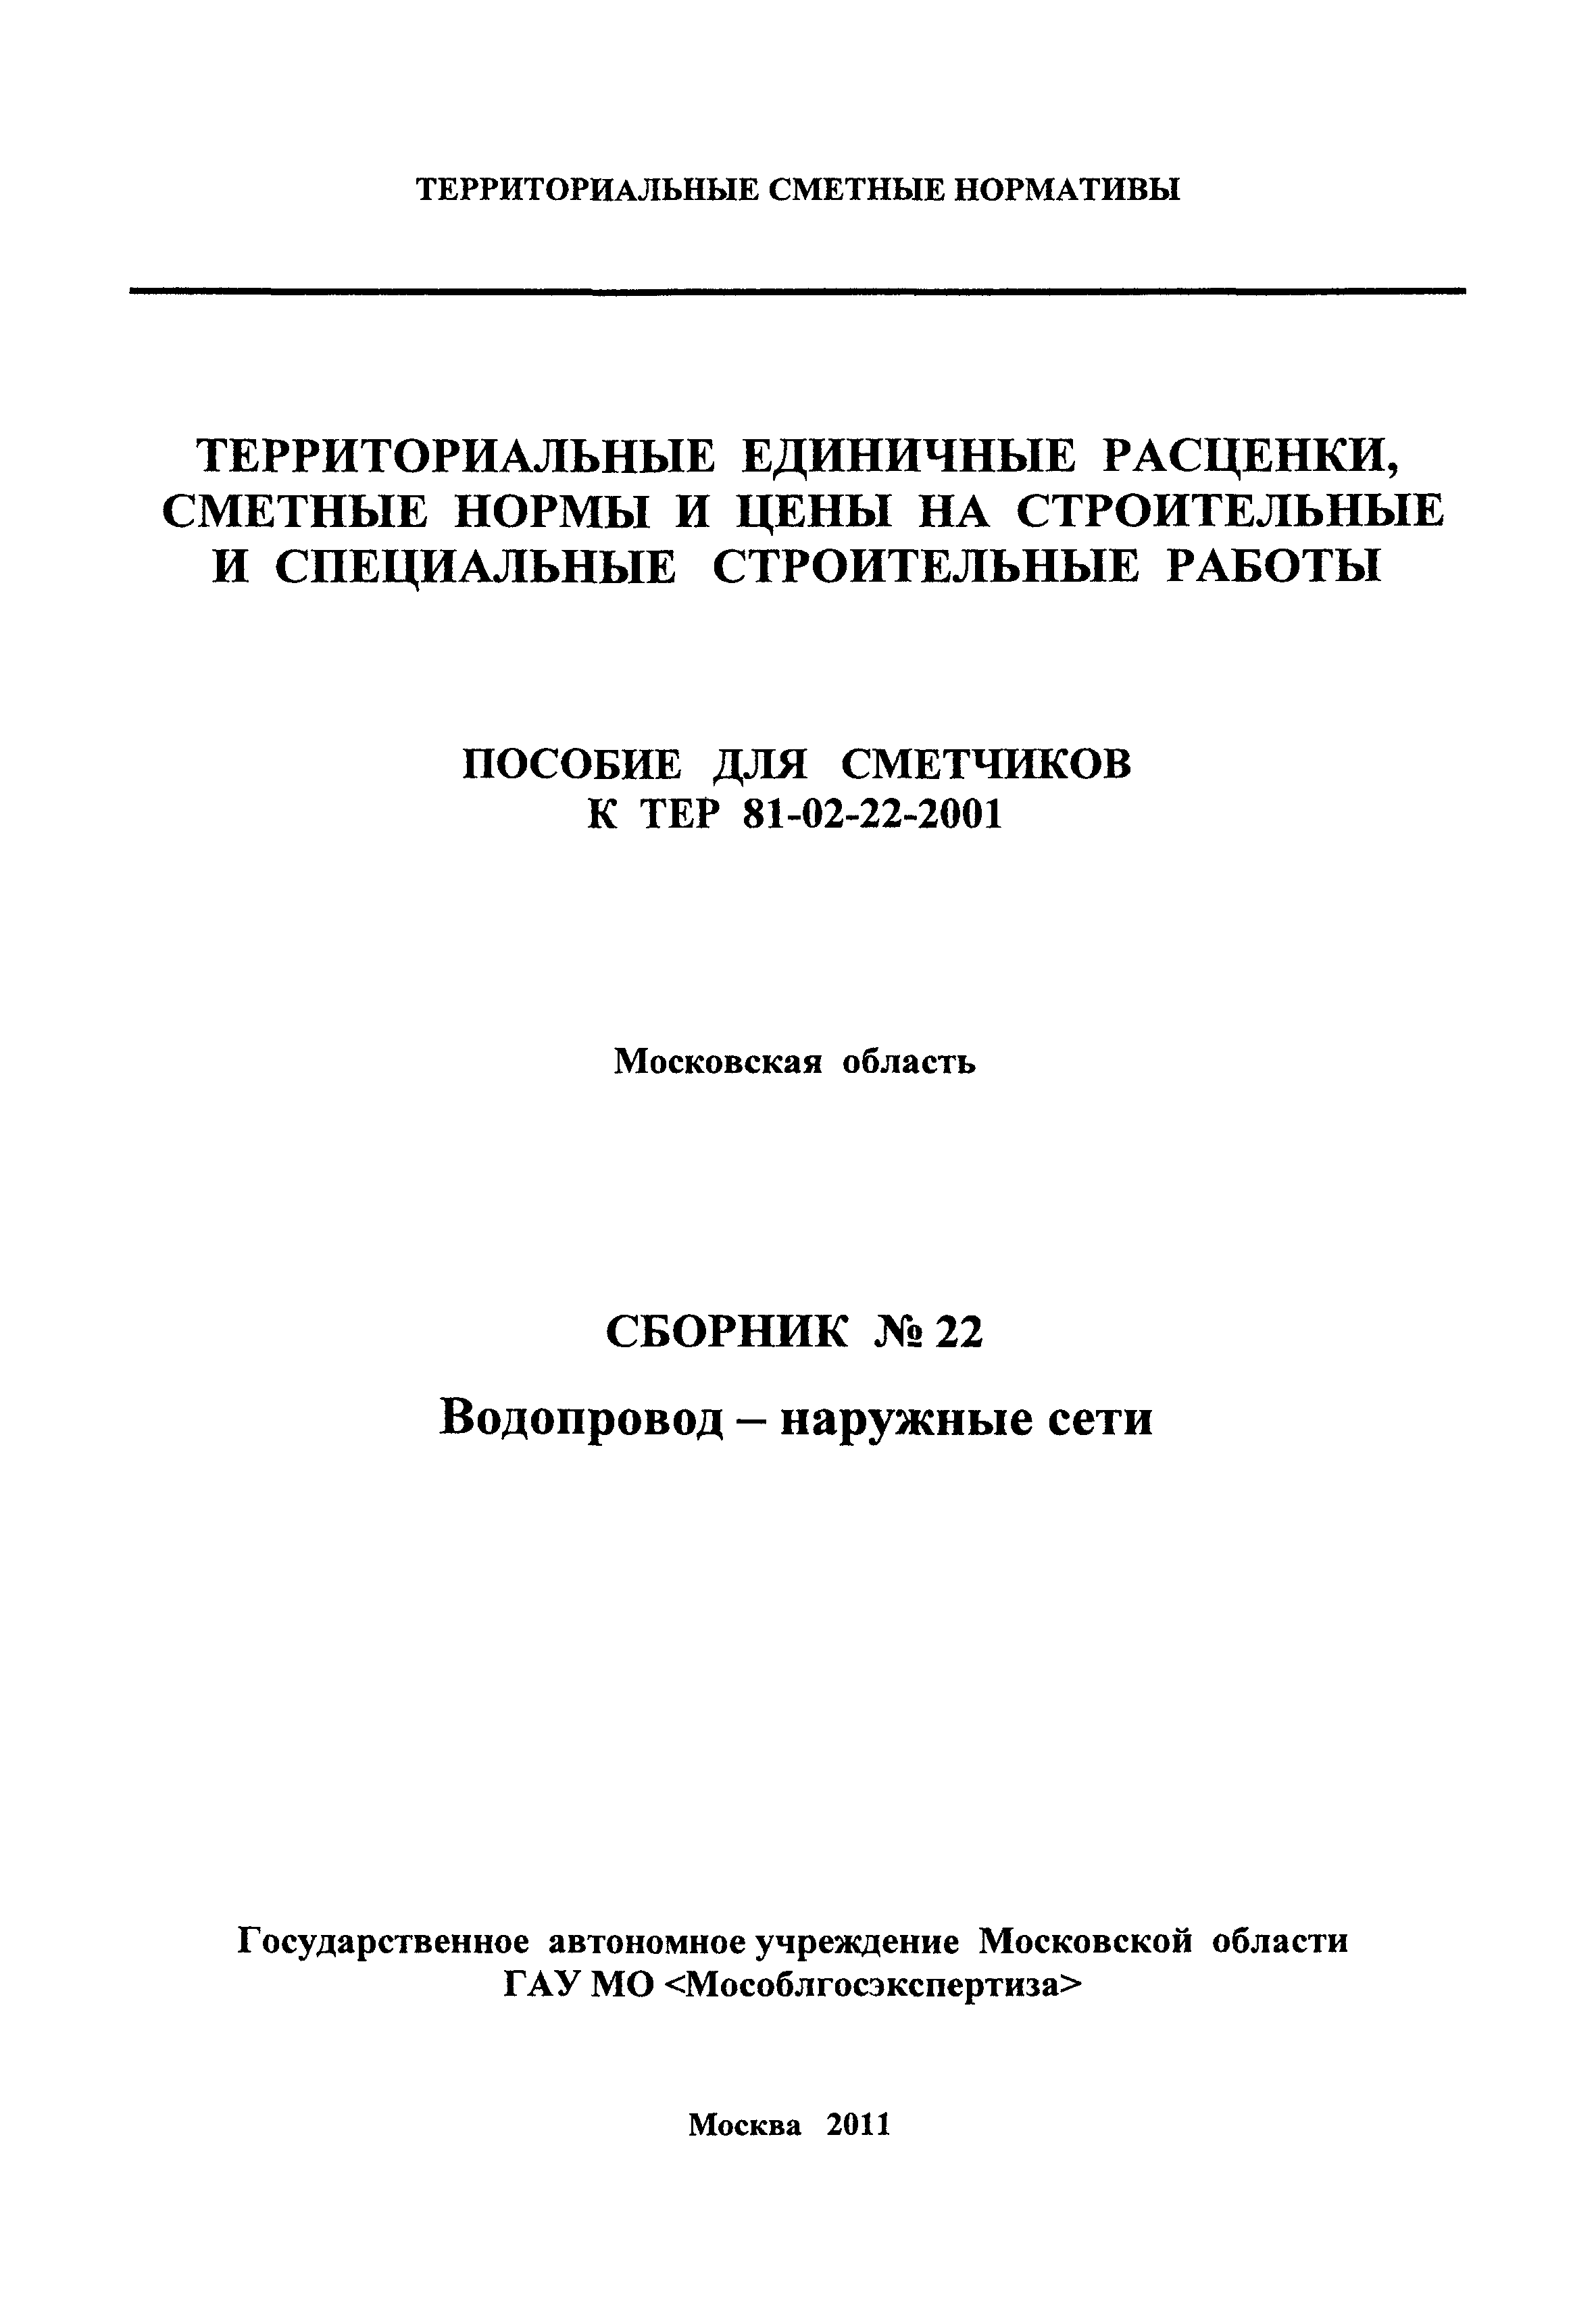 ГЭСНПиТЕР 2001-22 Московской области